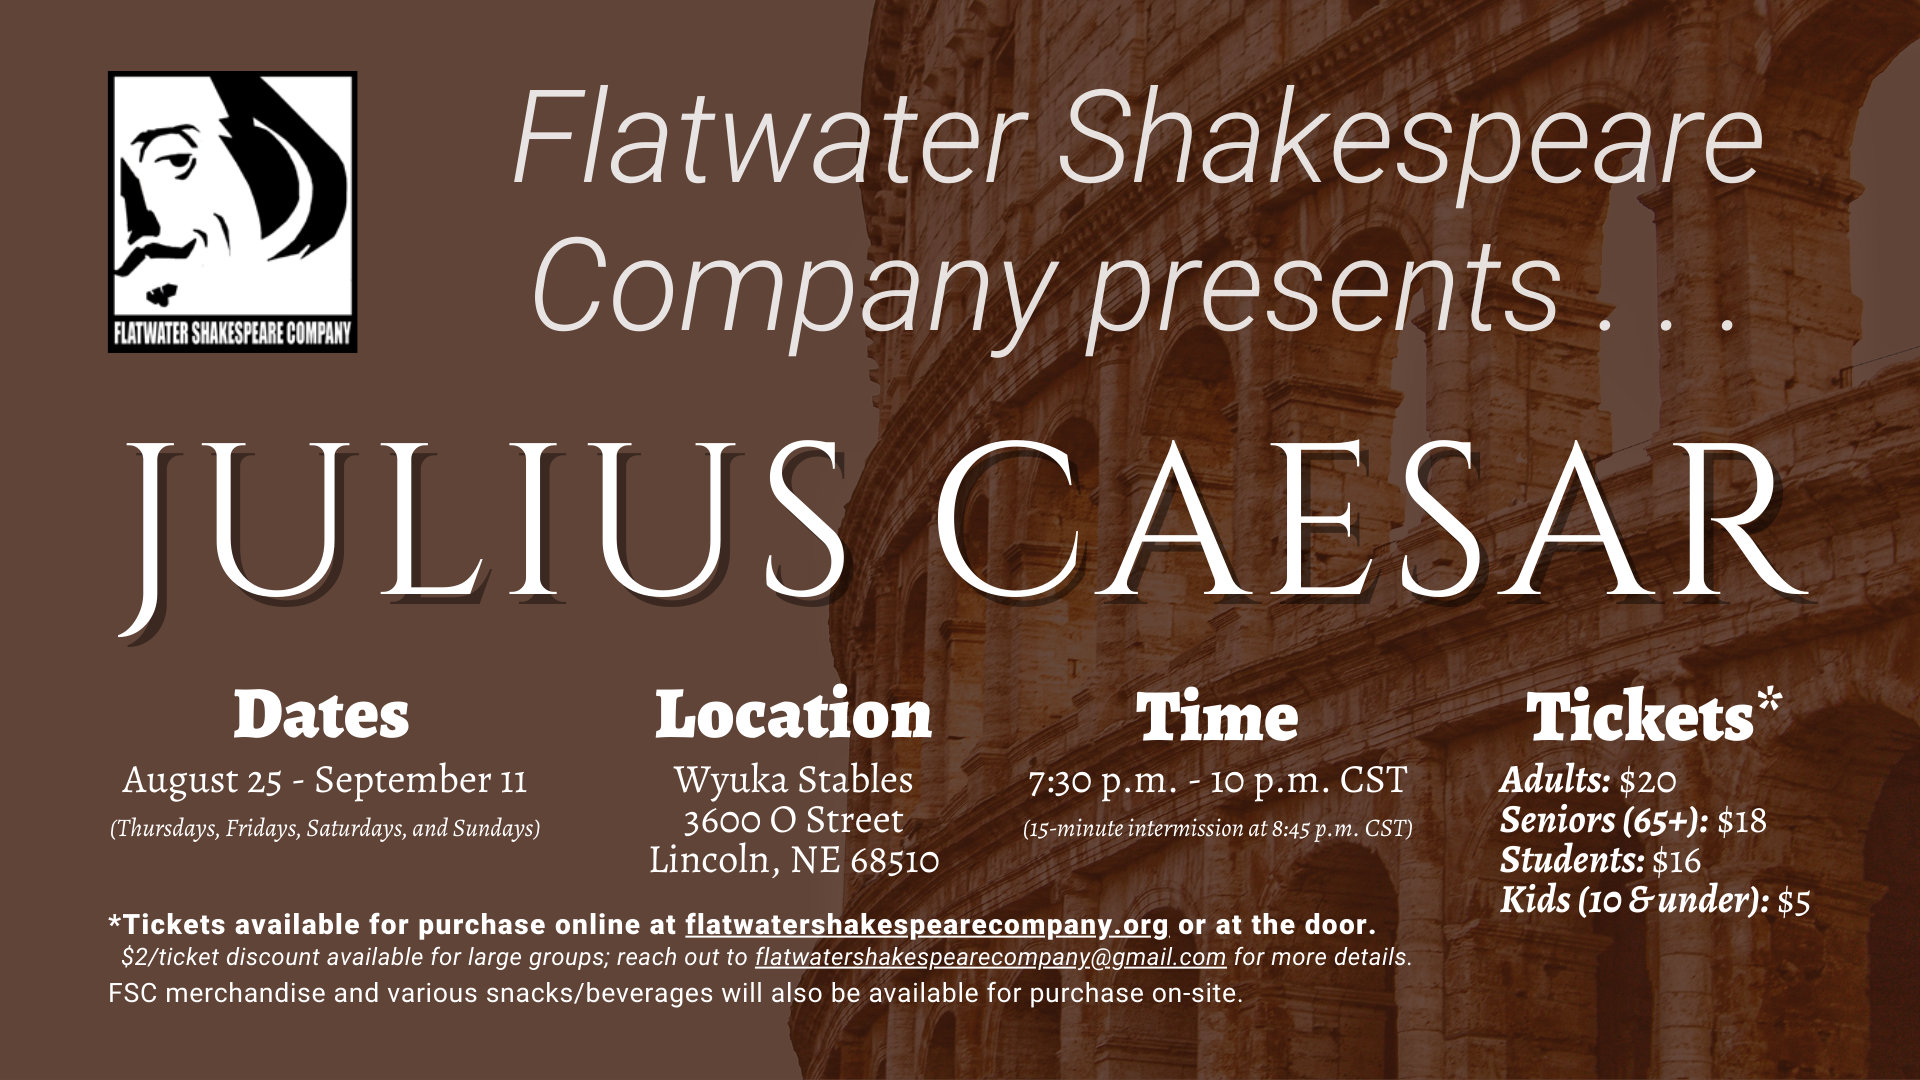 #01STU –– STUDENT: Thurs. Aug. 25, 2022 | 7:30 p.m. - 10 p.m. CST | Wyuka Stables (Julius Caesar)